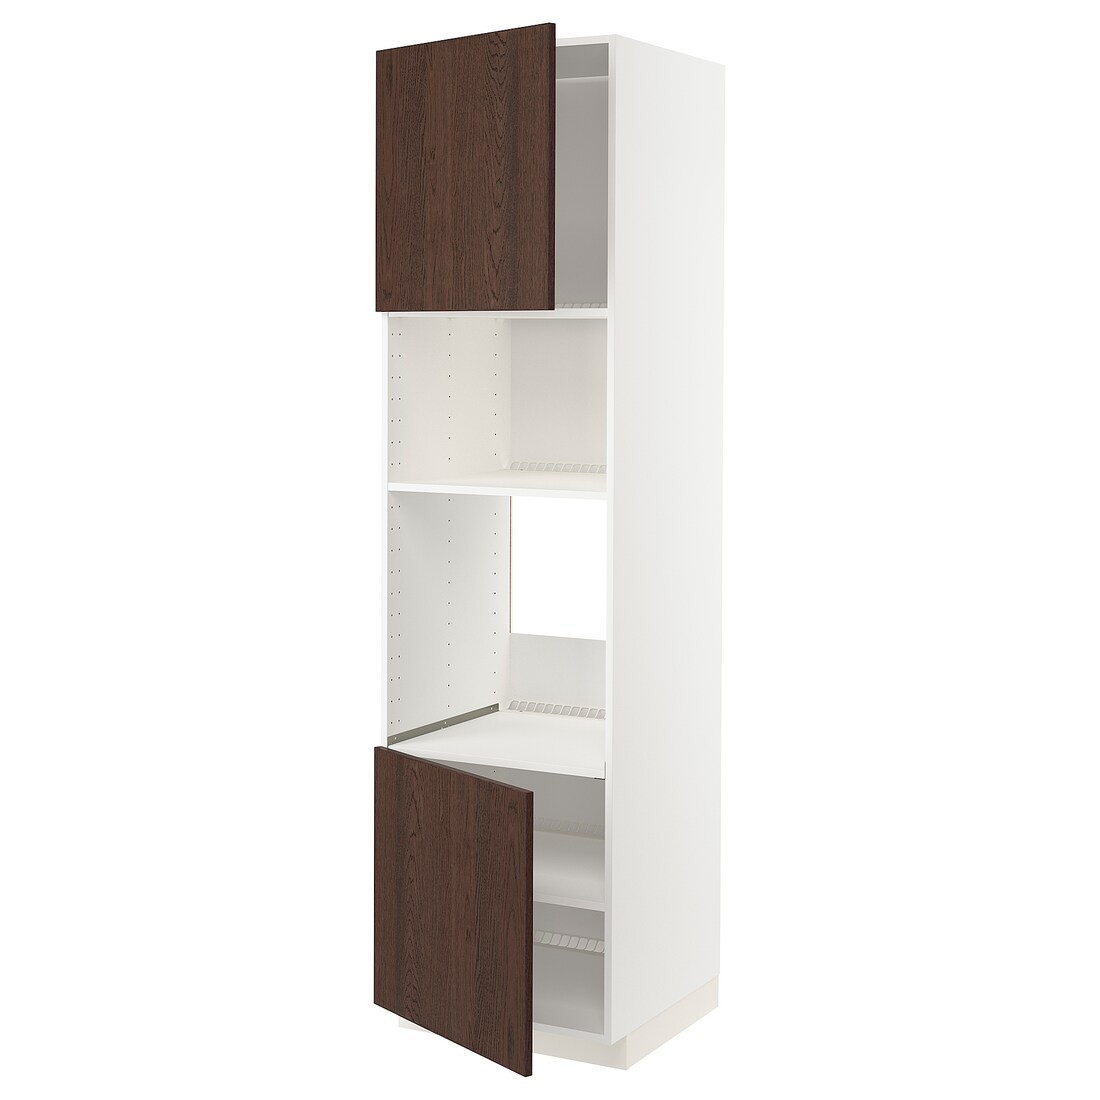 IKEA METOD МЕТОД Высокий шкаф для духовки / СВЧ, белый / Sinarp коричневый, 60x60x220 см 99465514 | 994.655.14